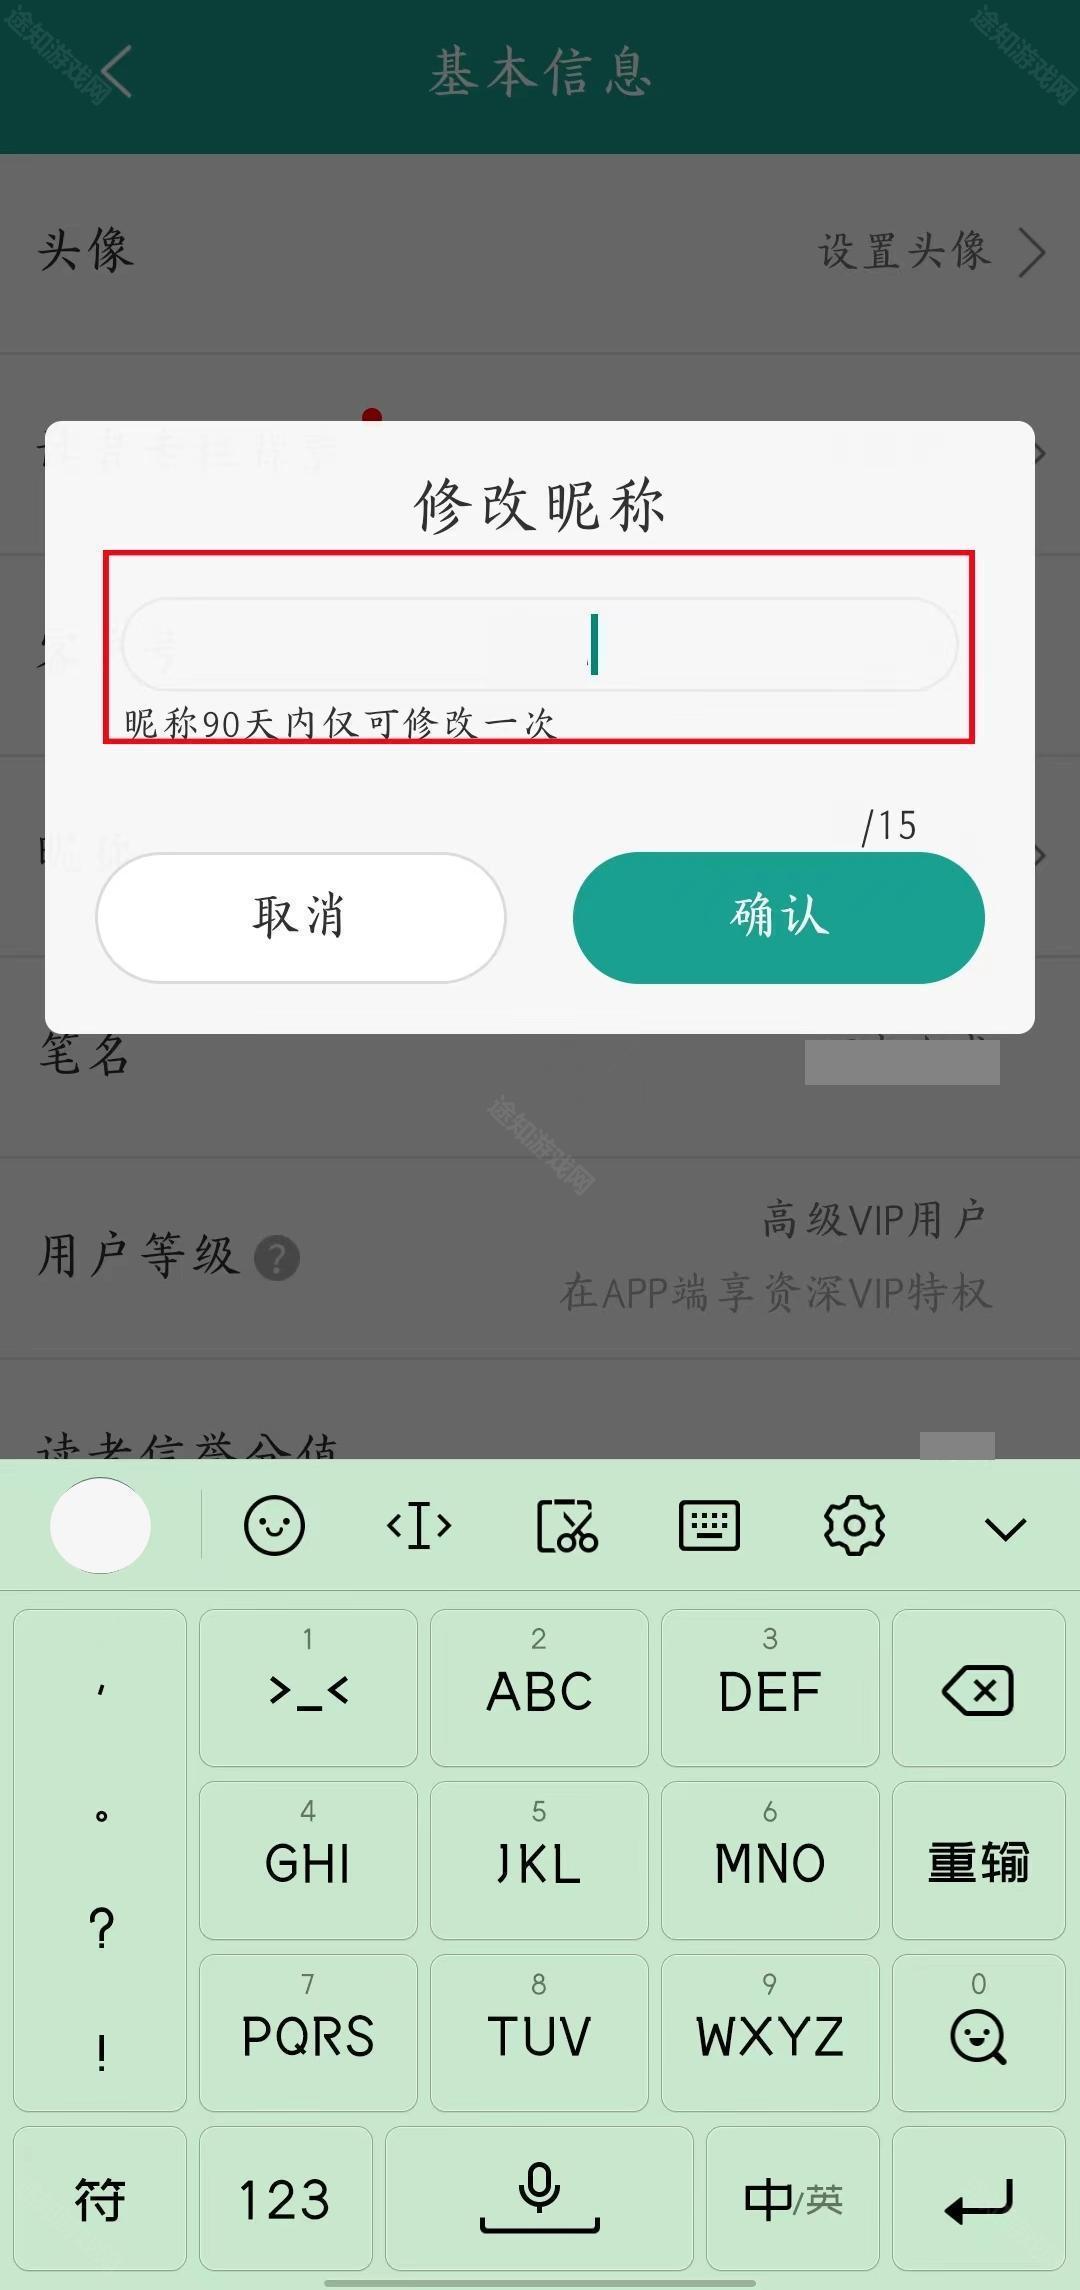 《晋江小说阅读》用户名称修改方法